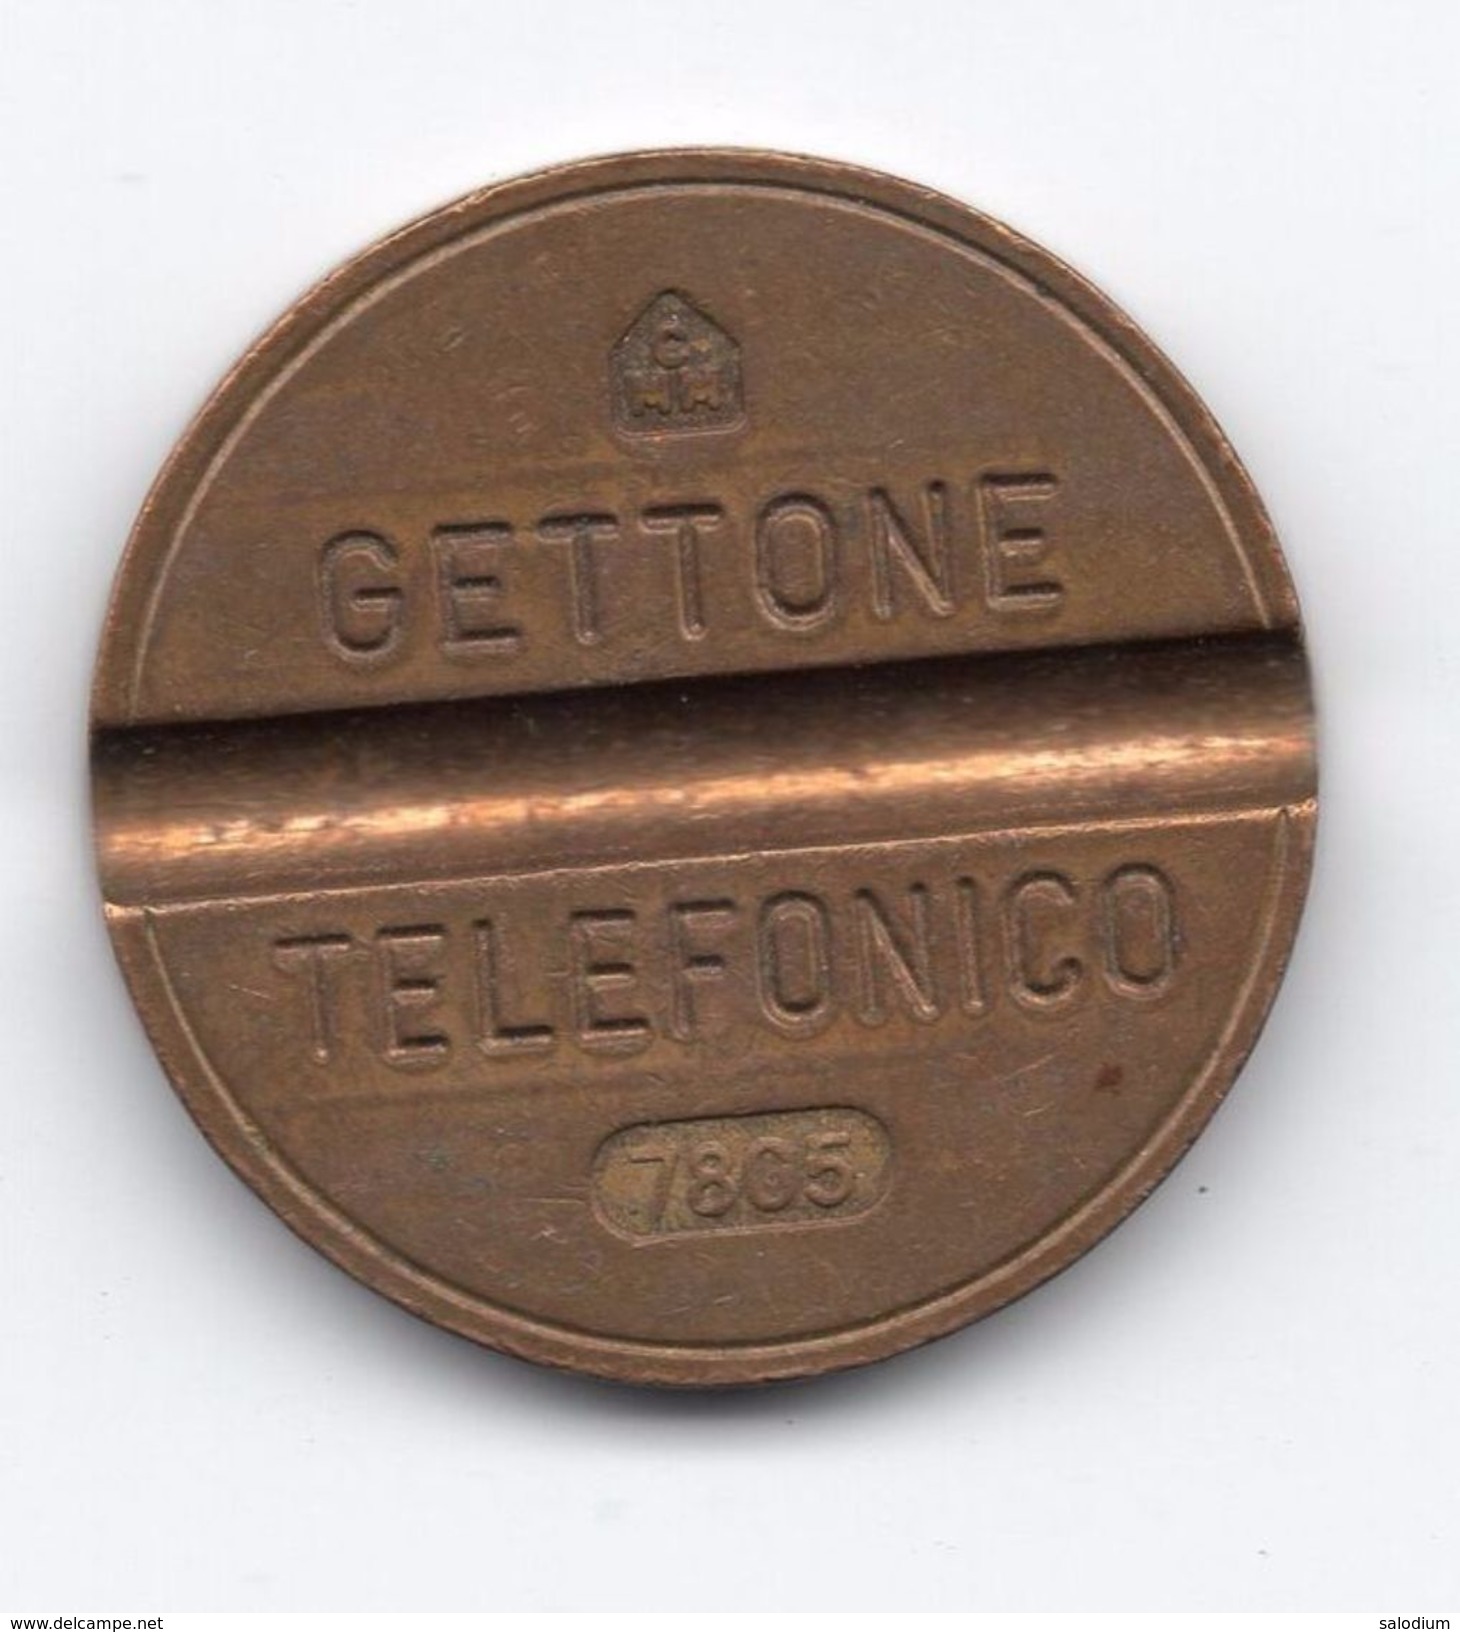 Gettone Telefonico 7805 Token Telephone - (Id-791) - Professionnels/De Société